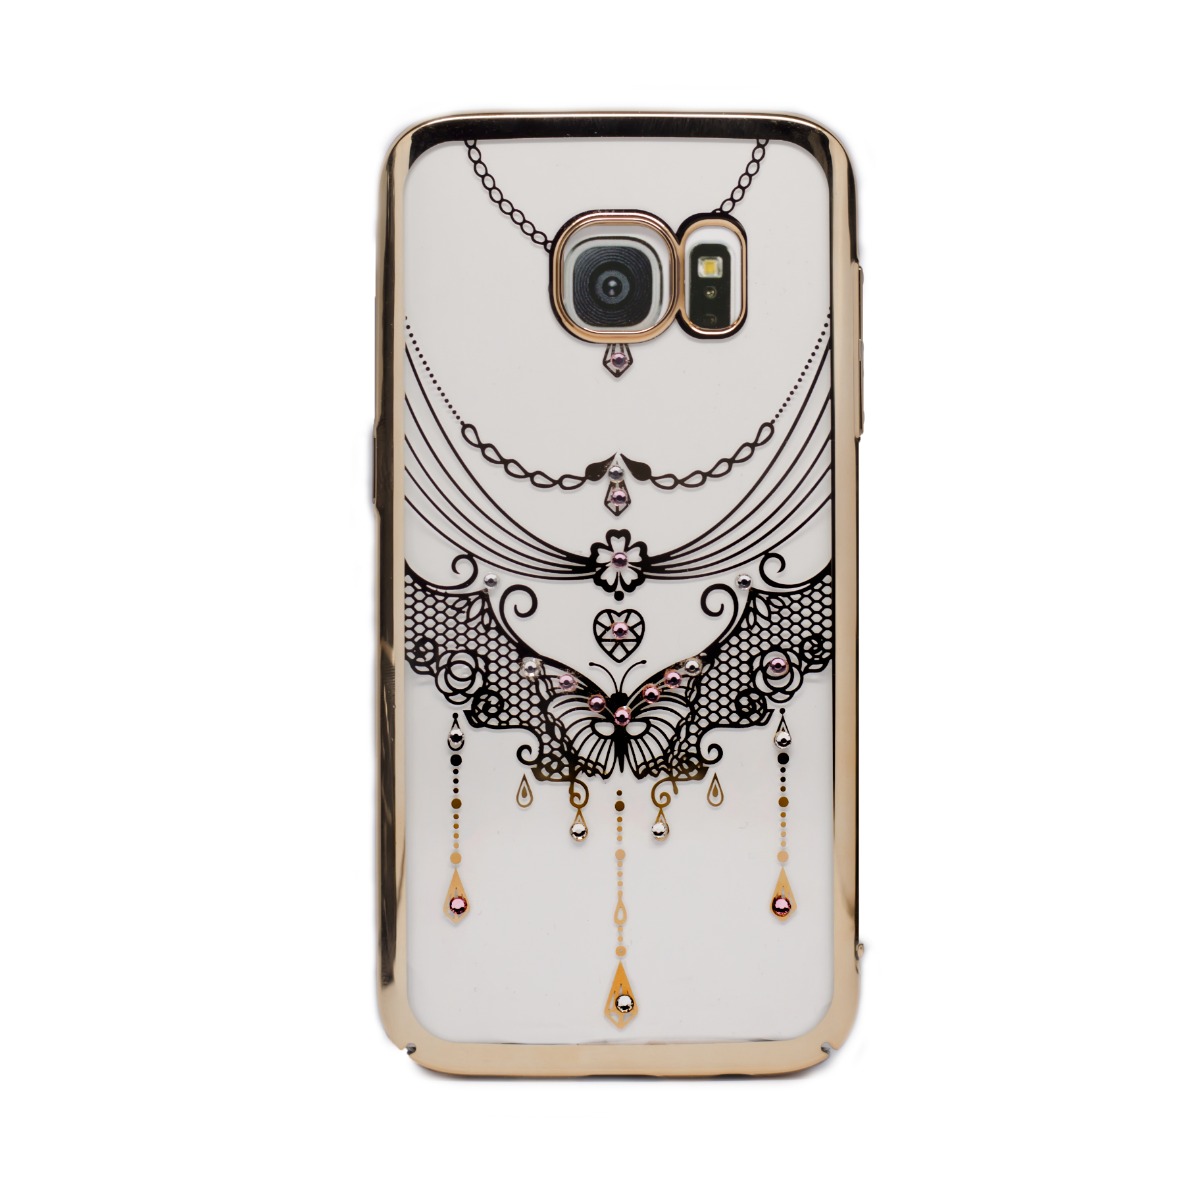 Carcasa hard fashion Samsung Galaxy S7, Contakt Gold Butterfly thumb